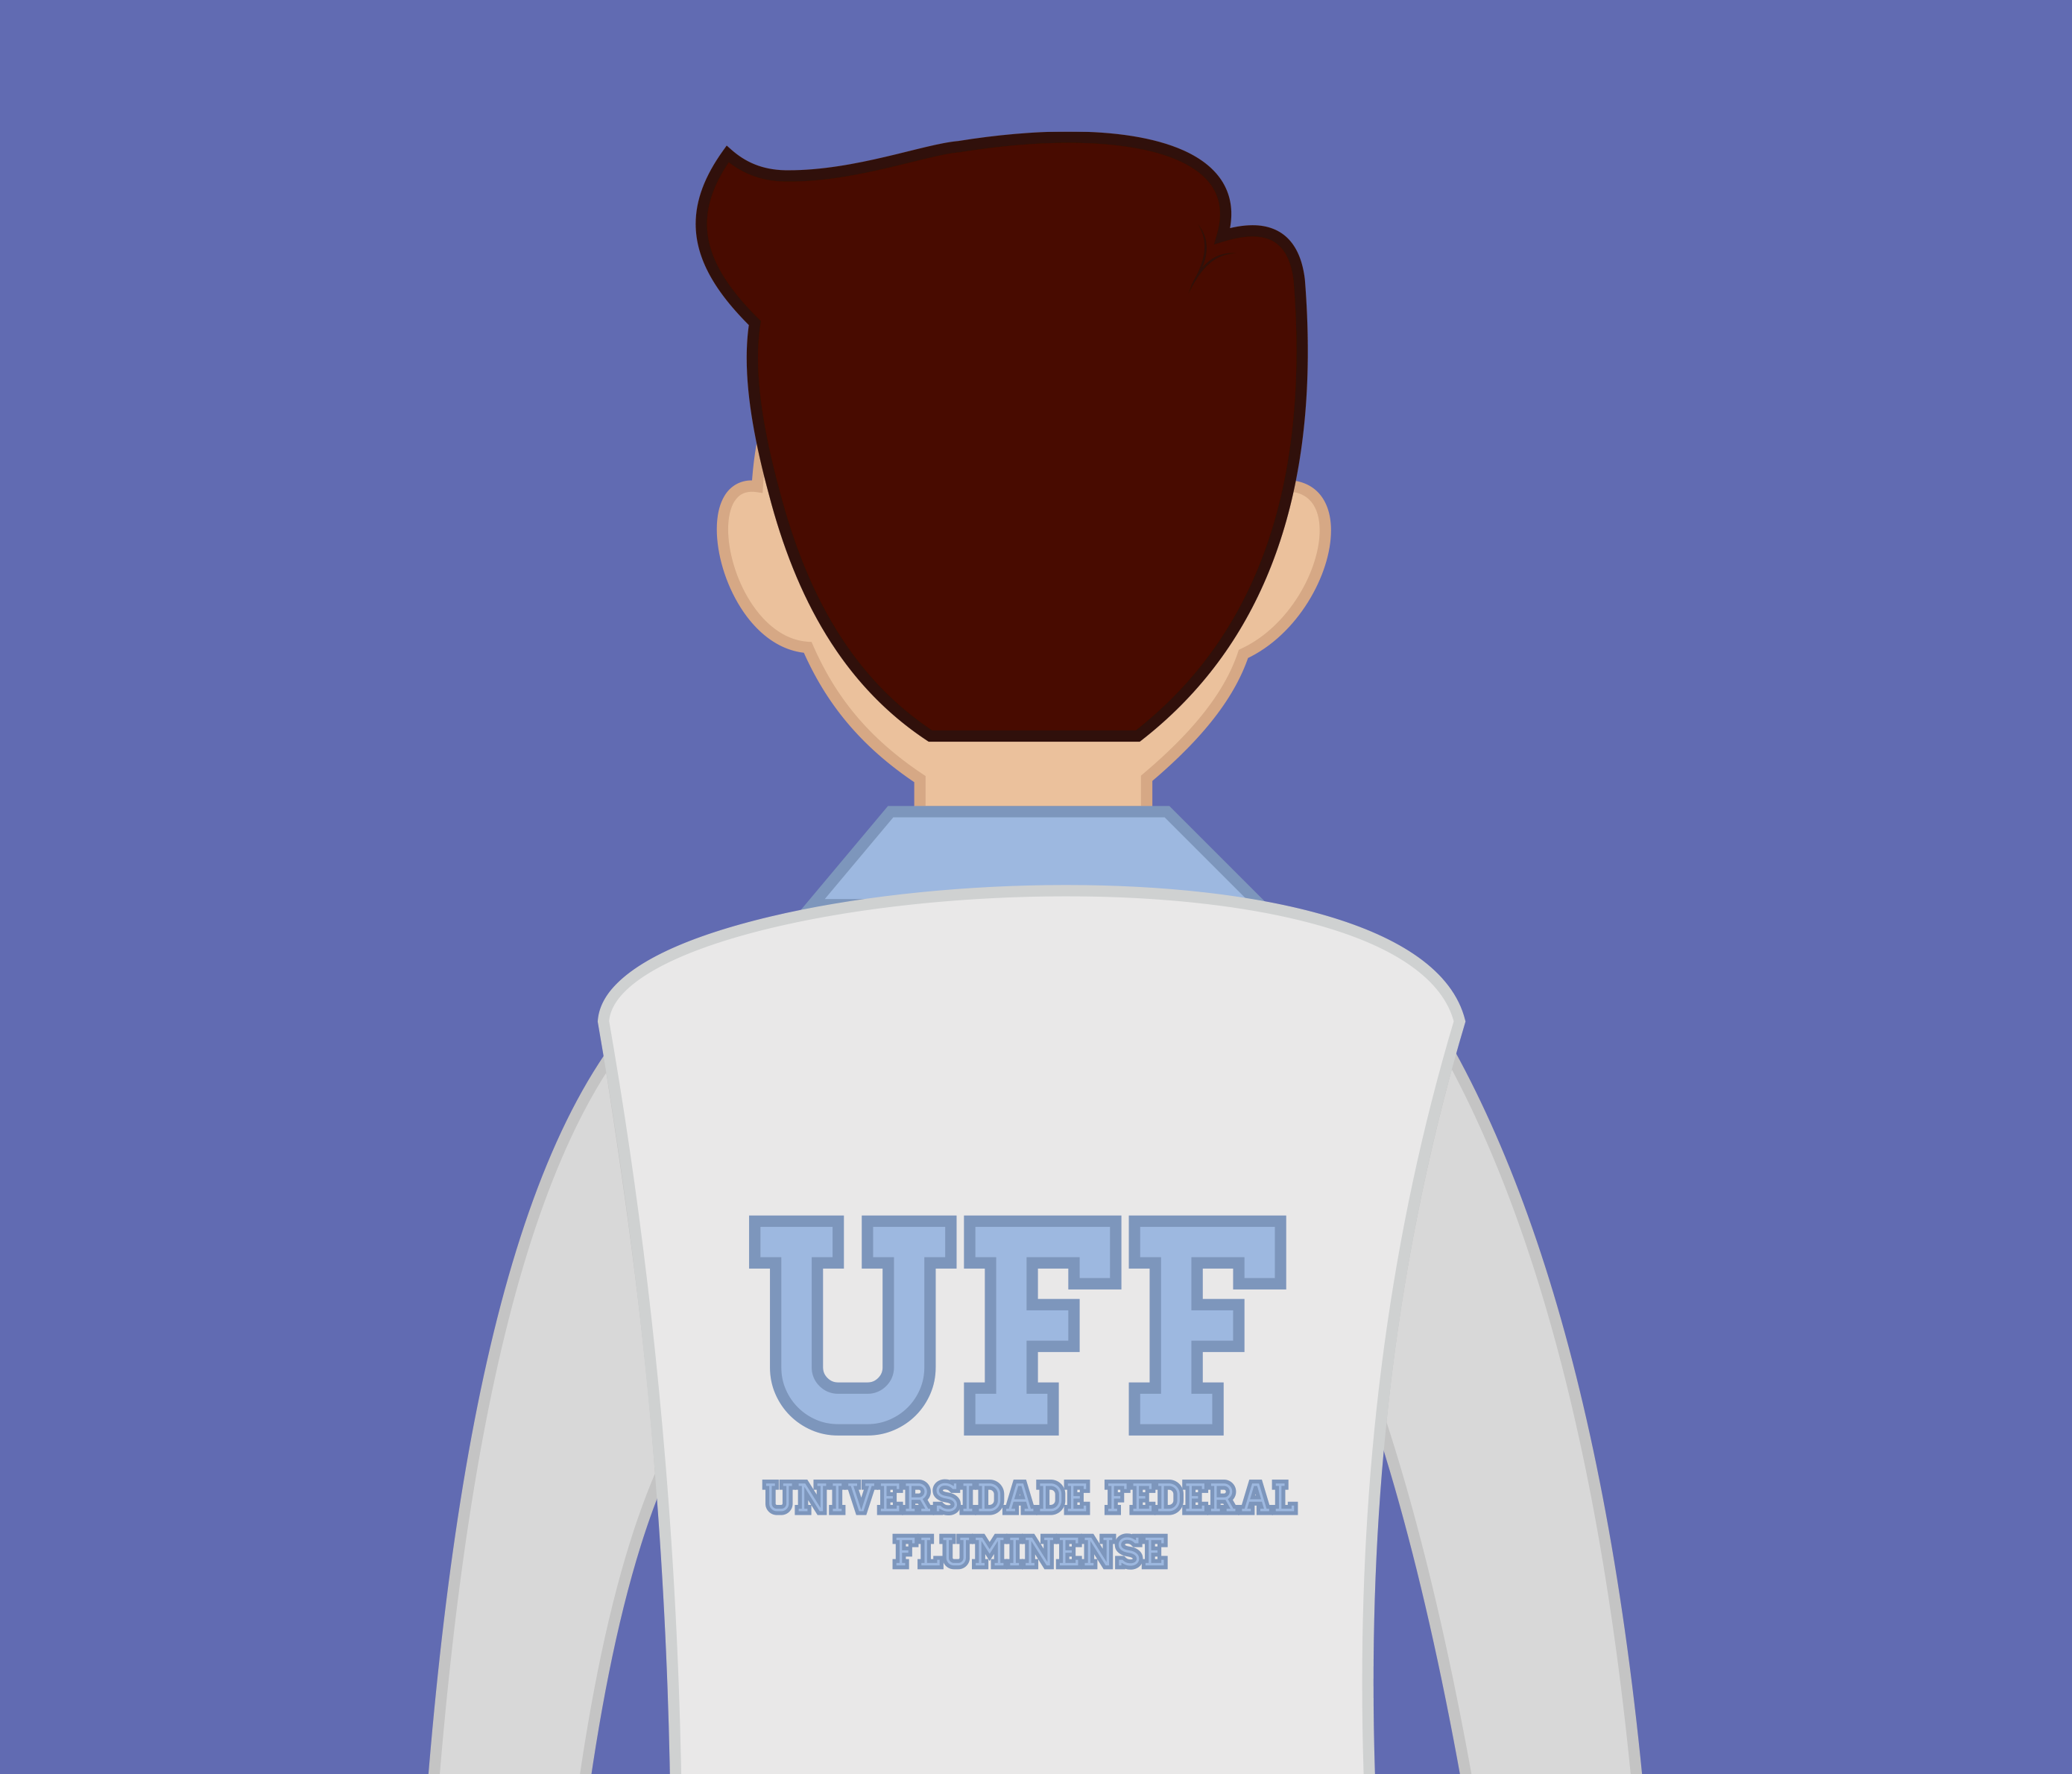 Saiba como fazer terapia na UFF  Universidade Federal Fluminense